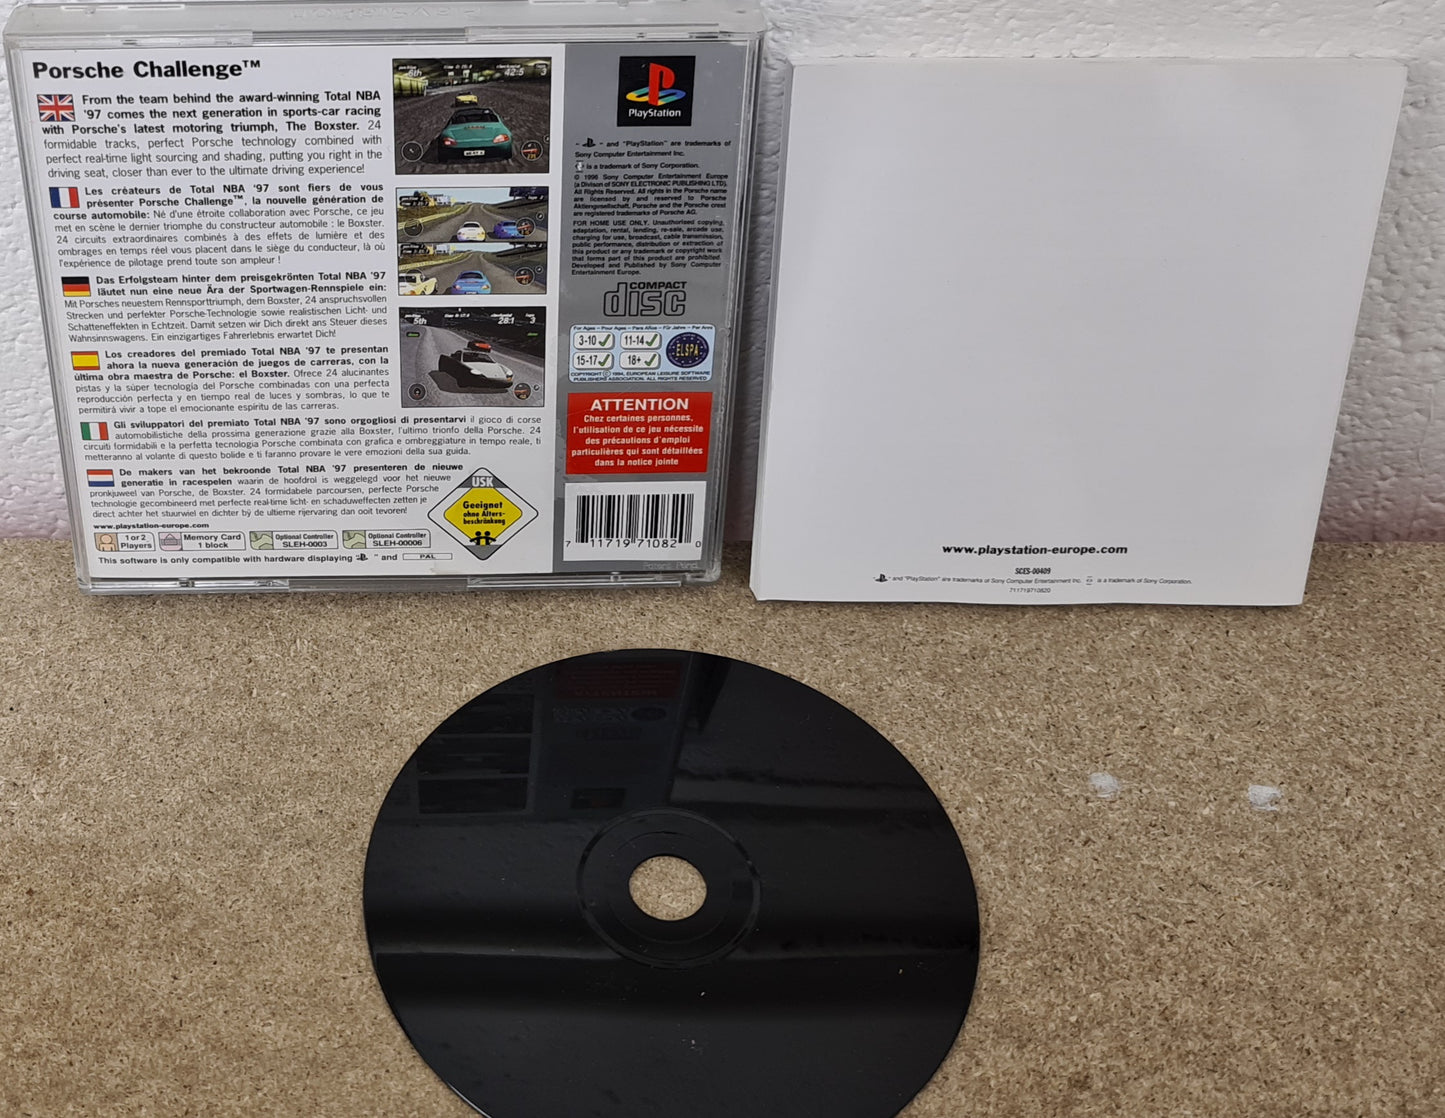 Porsche Challenge Platinum Sony Playstation 1 (PS1) Game